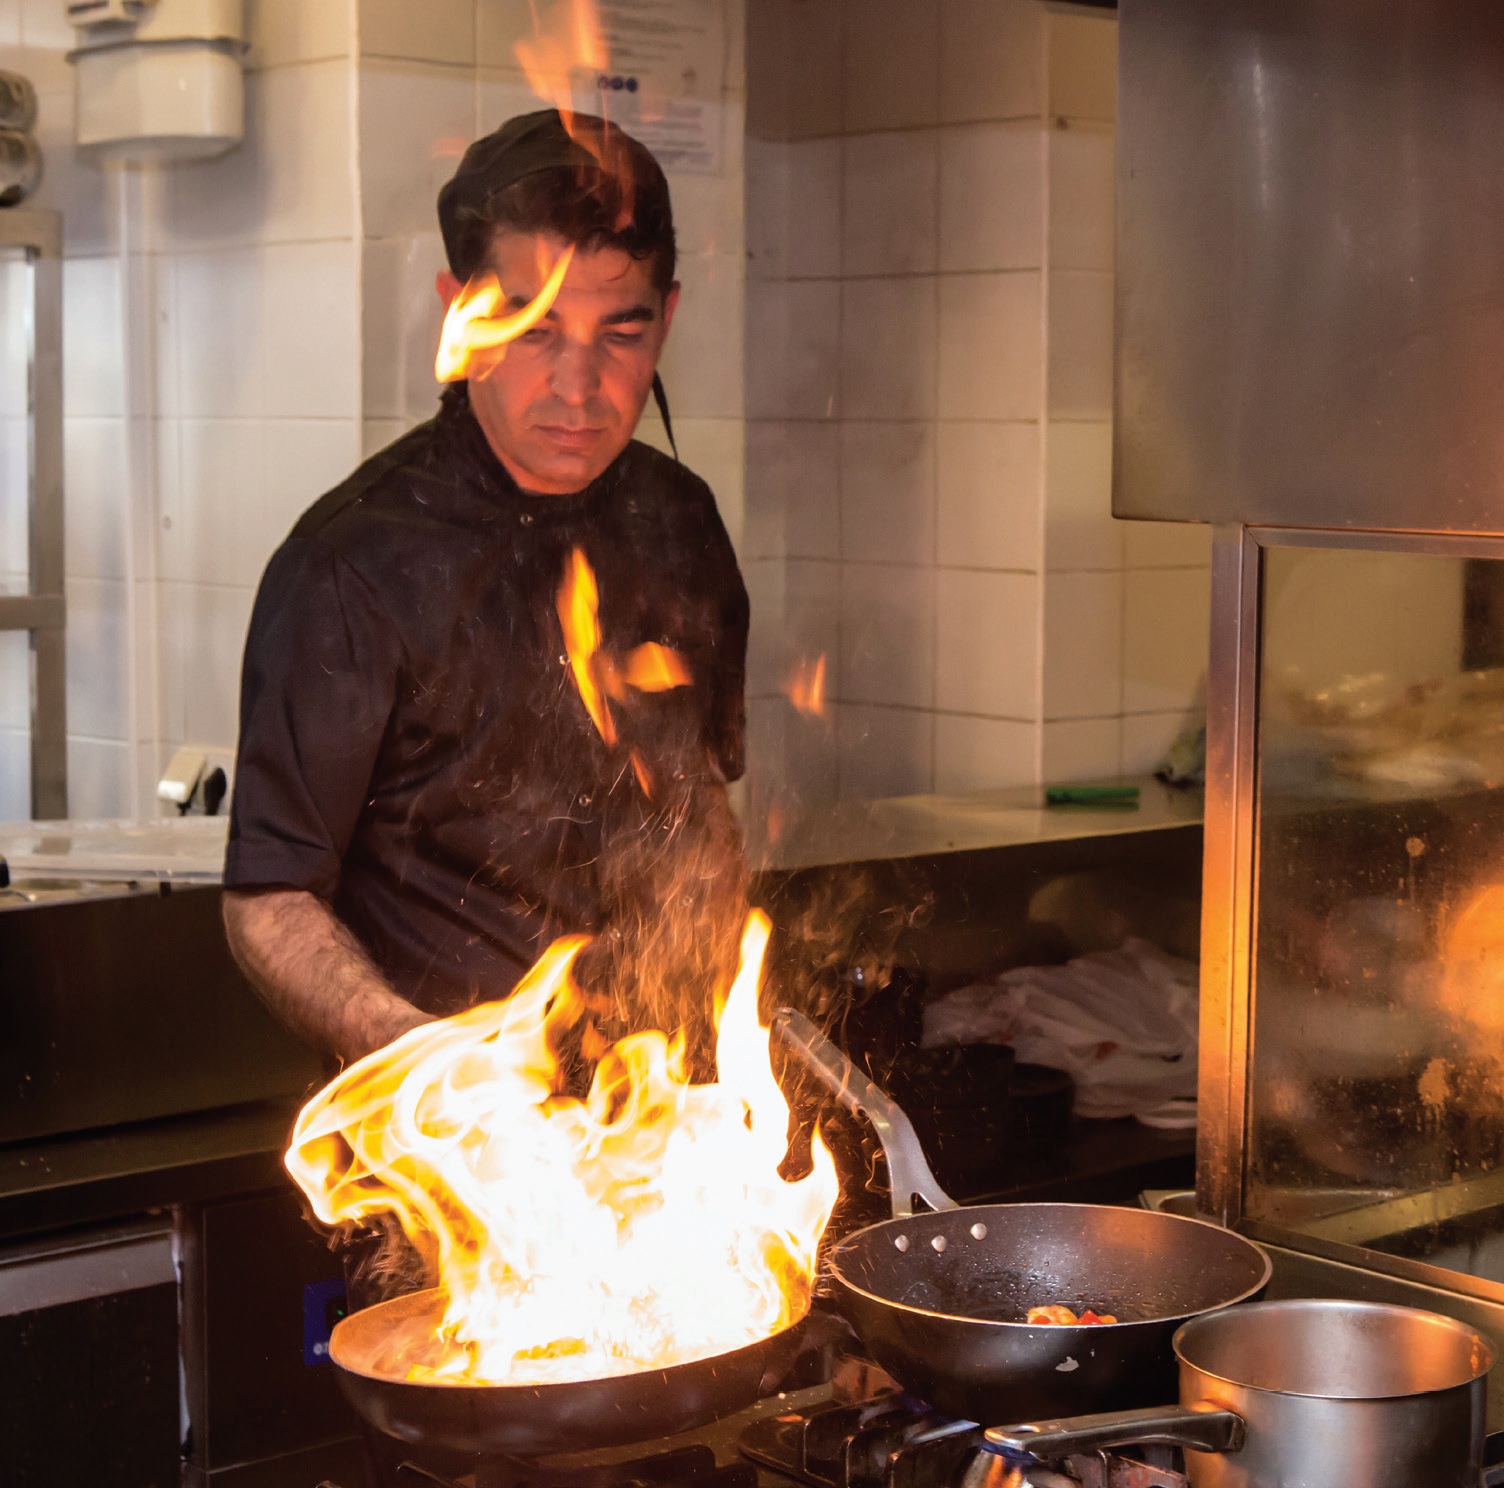 Virtuvės šefo Michaelio Yilmazo ugnies burtai restorano virtuvėje